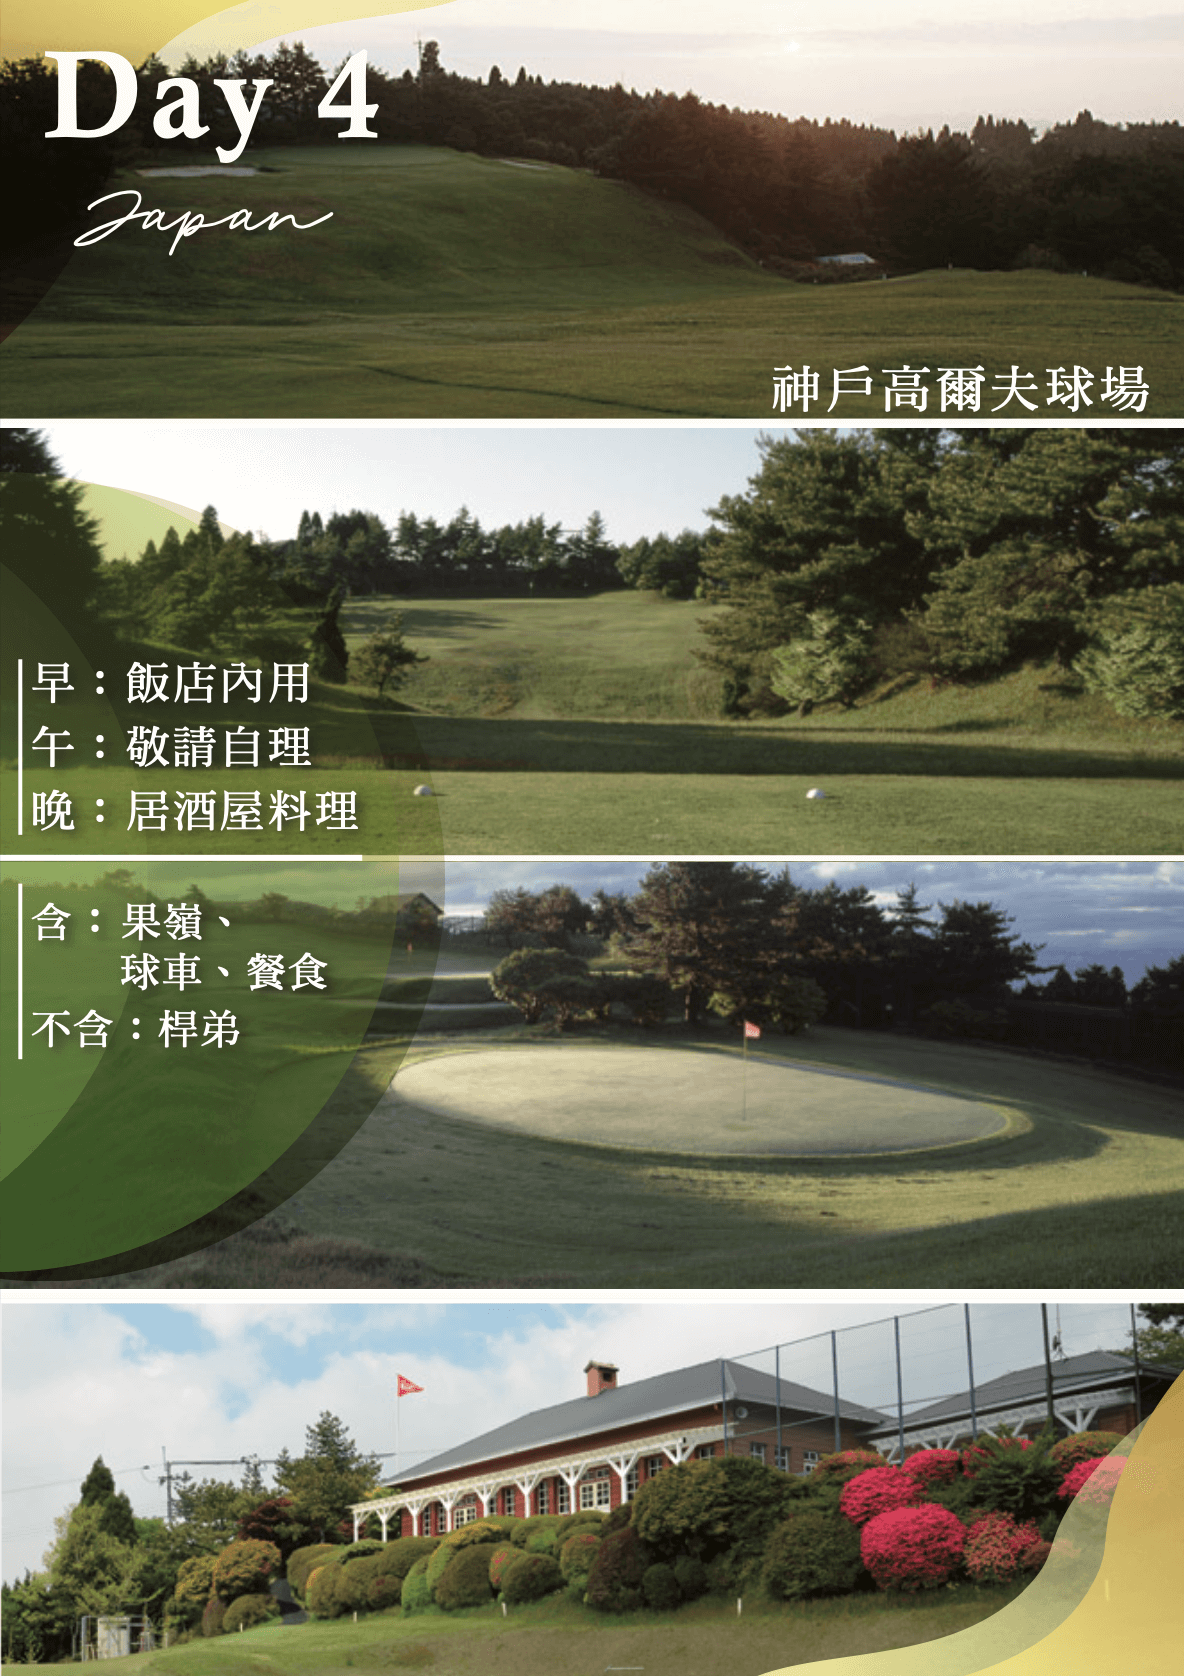 神戶高爾夫專案5日